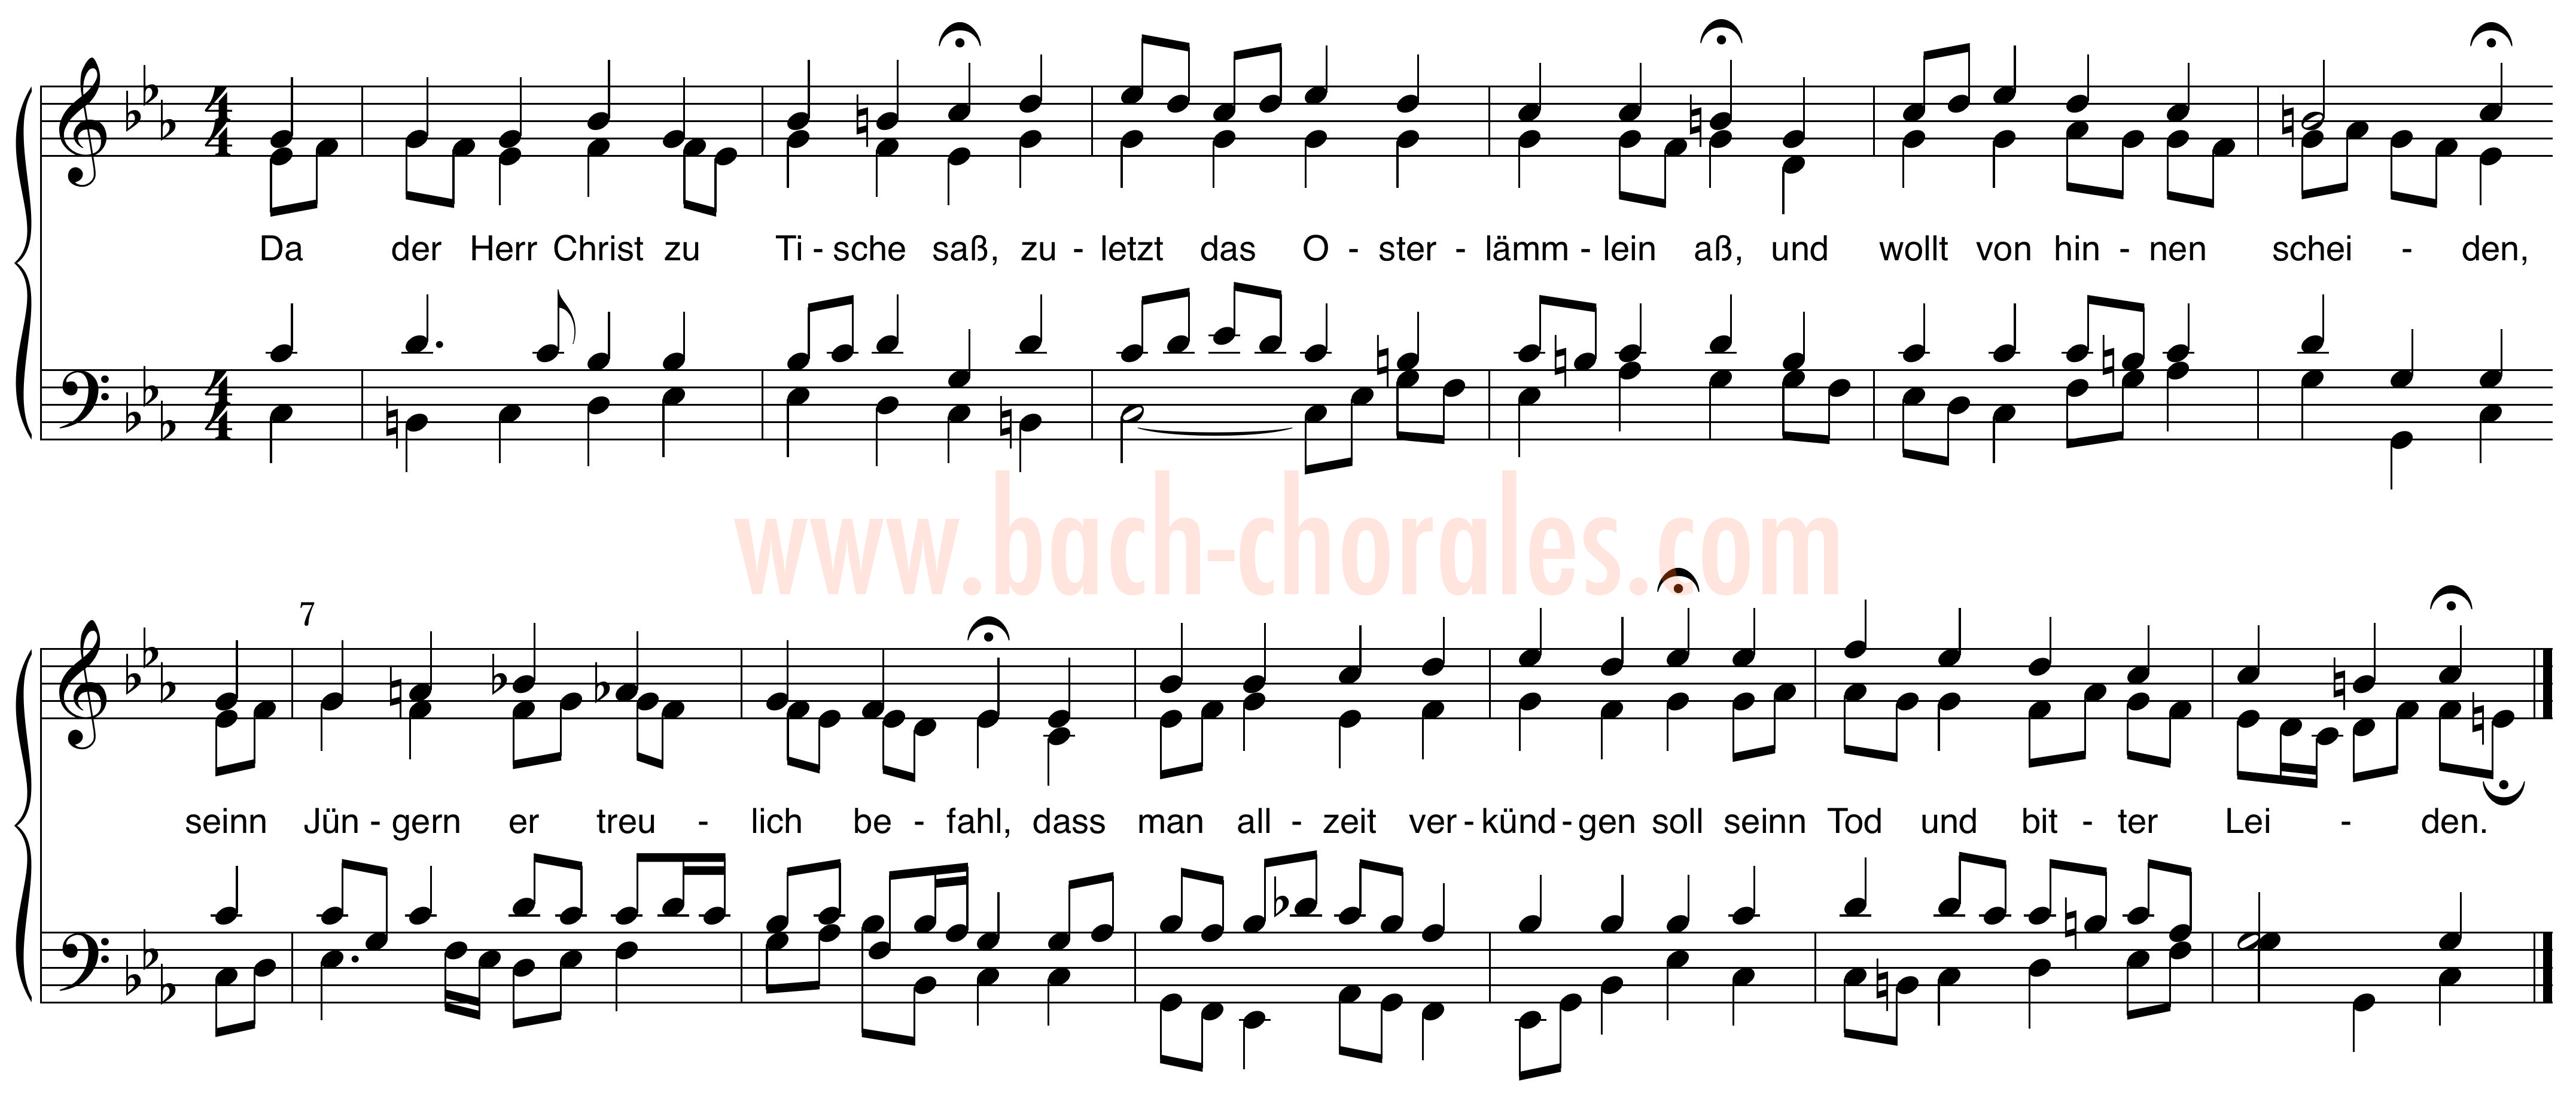 notenbeeld BWV 285 op https://www.bach-chorales.com/